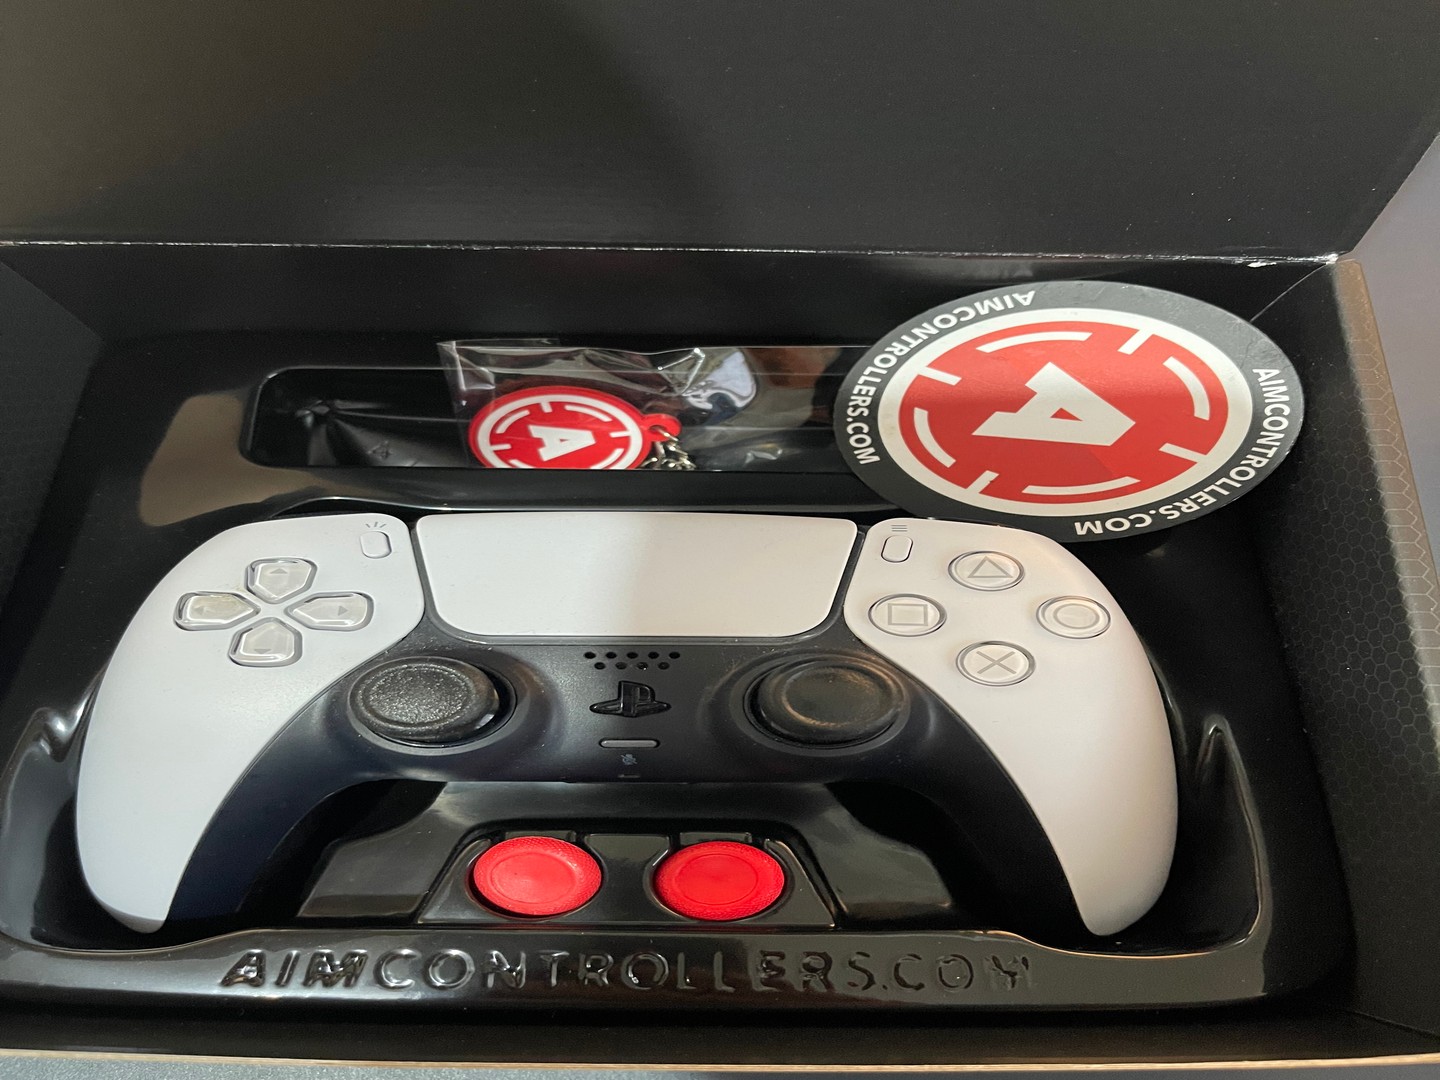 consolas y videojuegos - Control ps5 customizado Aim controller